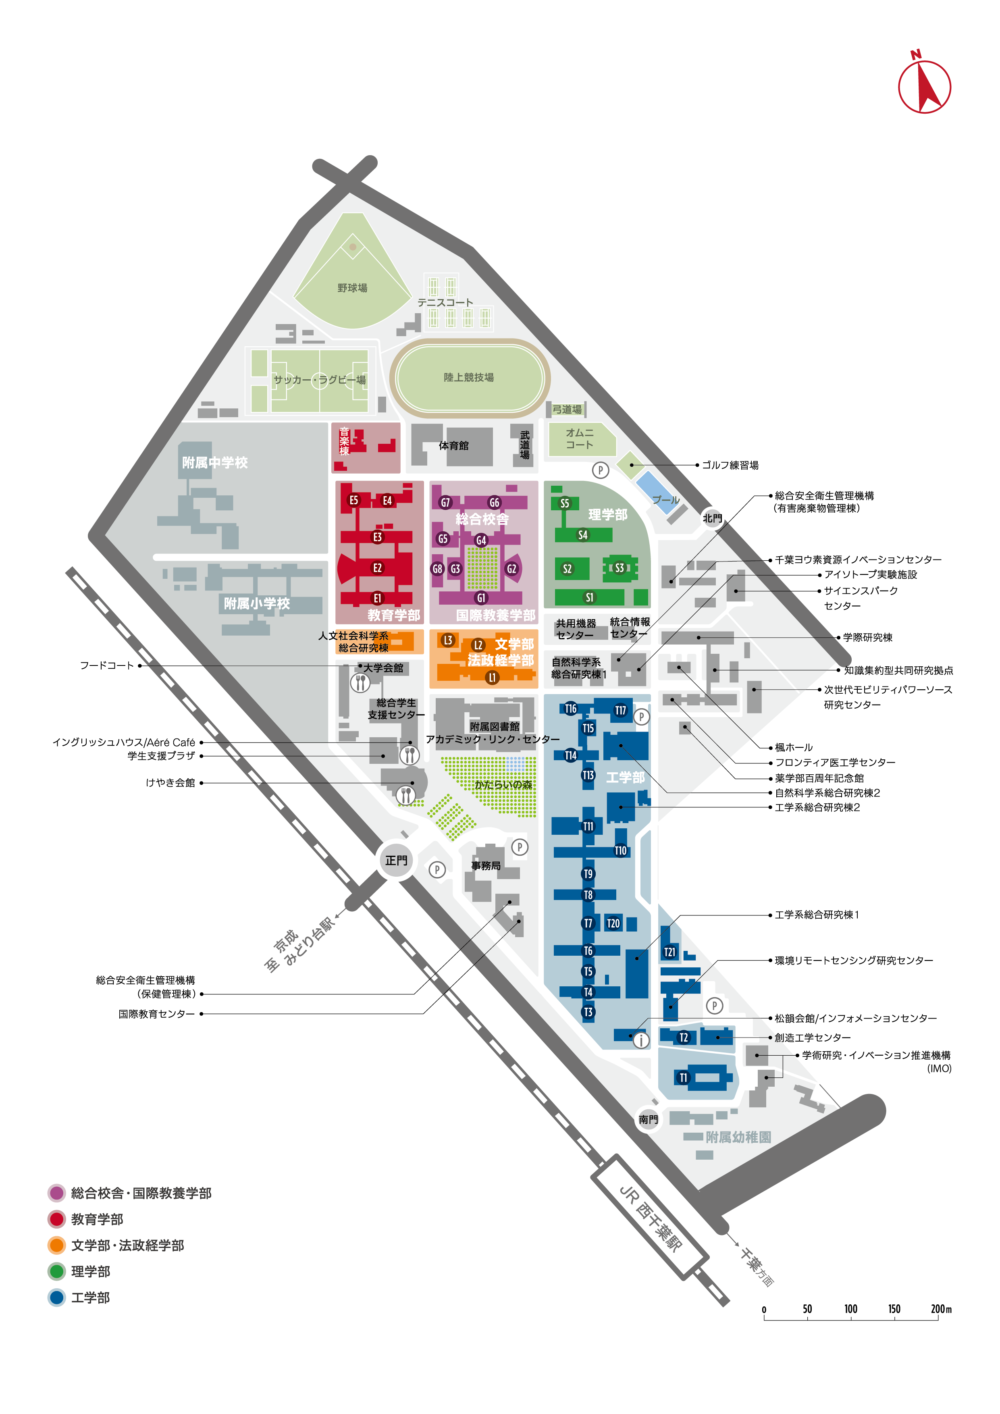 千葉大学キャンパスマップ